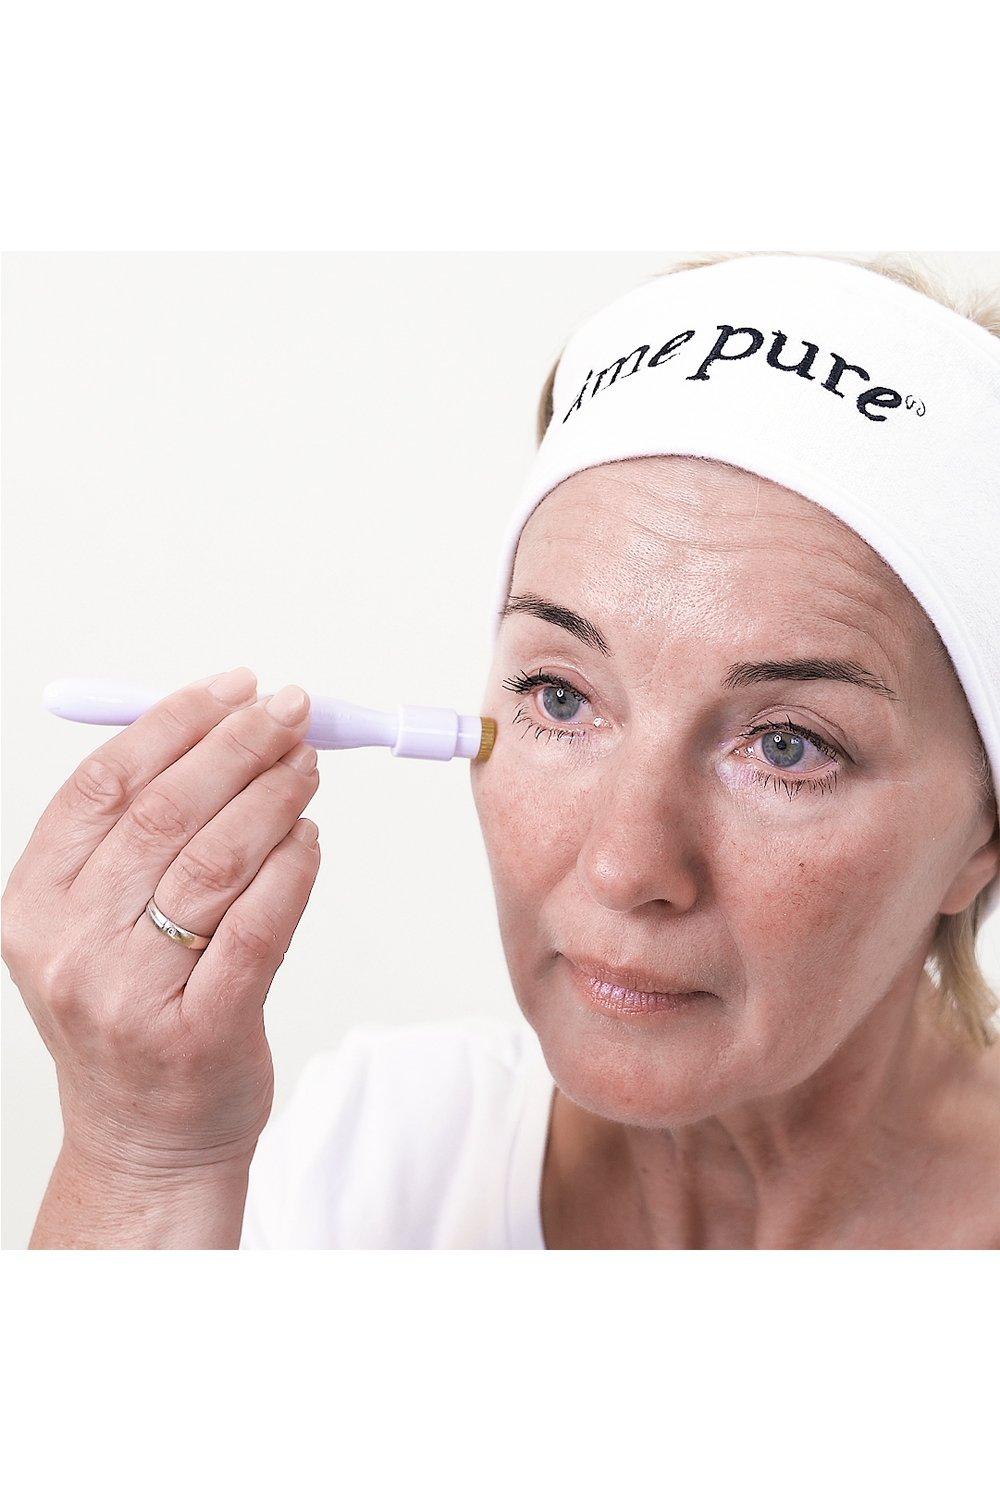 âme pure  CIT Pen BASIC KIT - Schnellwirkenden microneedling Behandlung: anti-aging WrinklEraser Gel + CIT Pen mit mikrofeinen Nadeln + Sanitizer Spray 